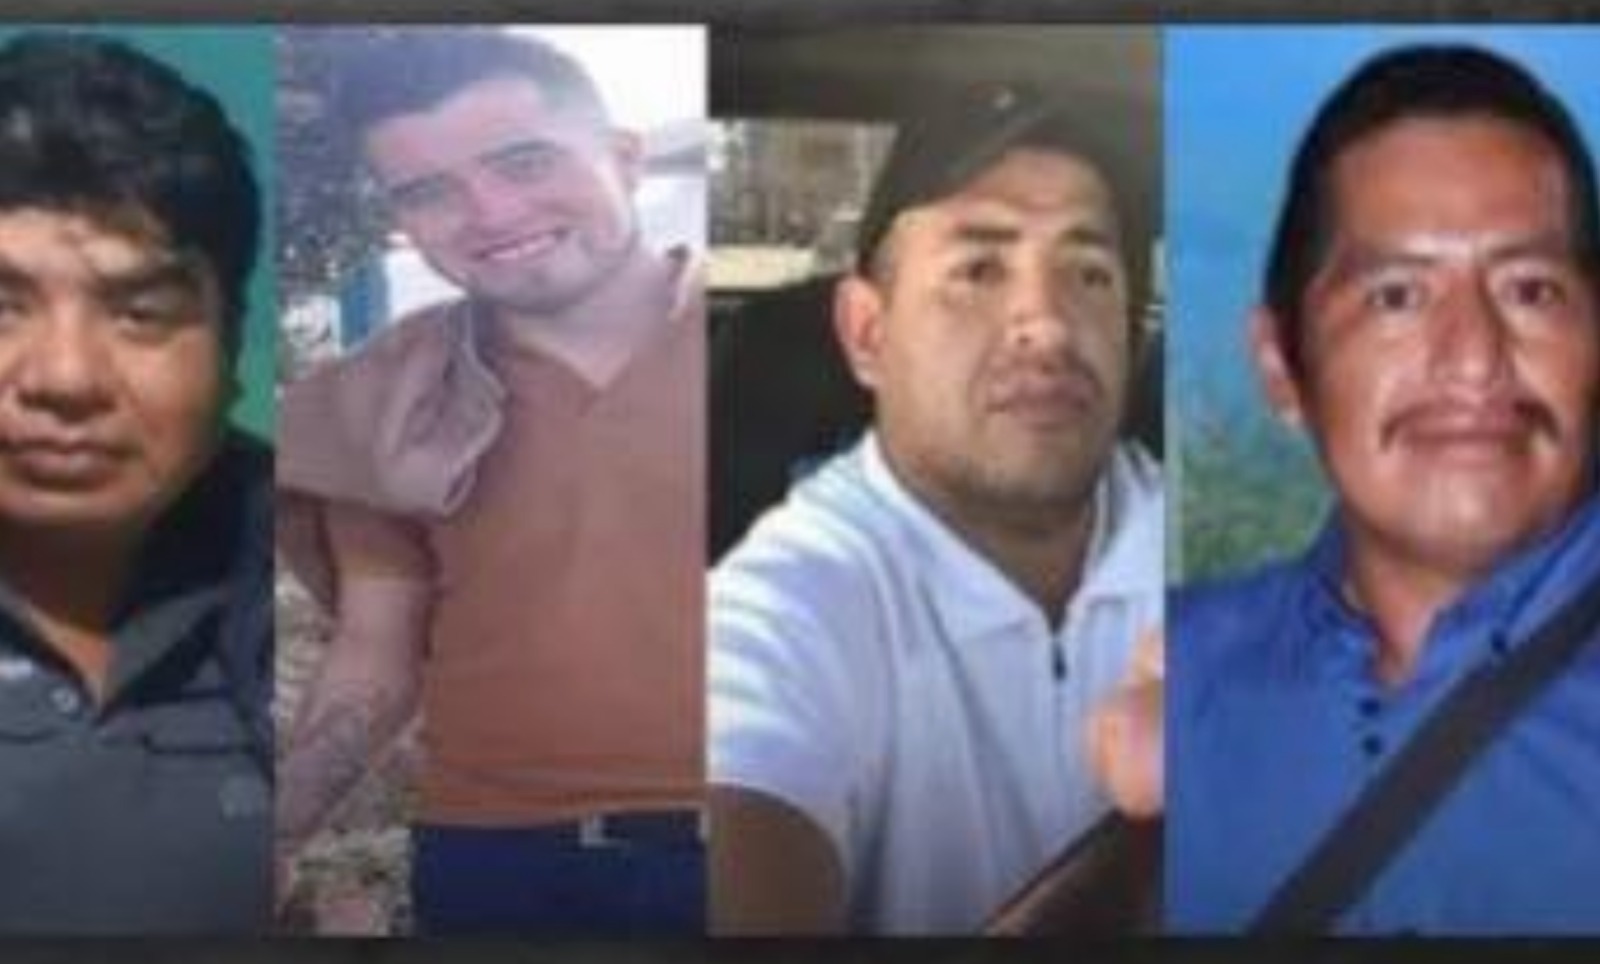 [VIDEO] Rescatados con vida trabajadores de pollería secuestrados en Toluca